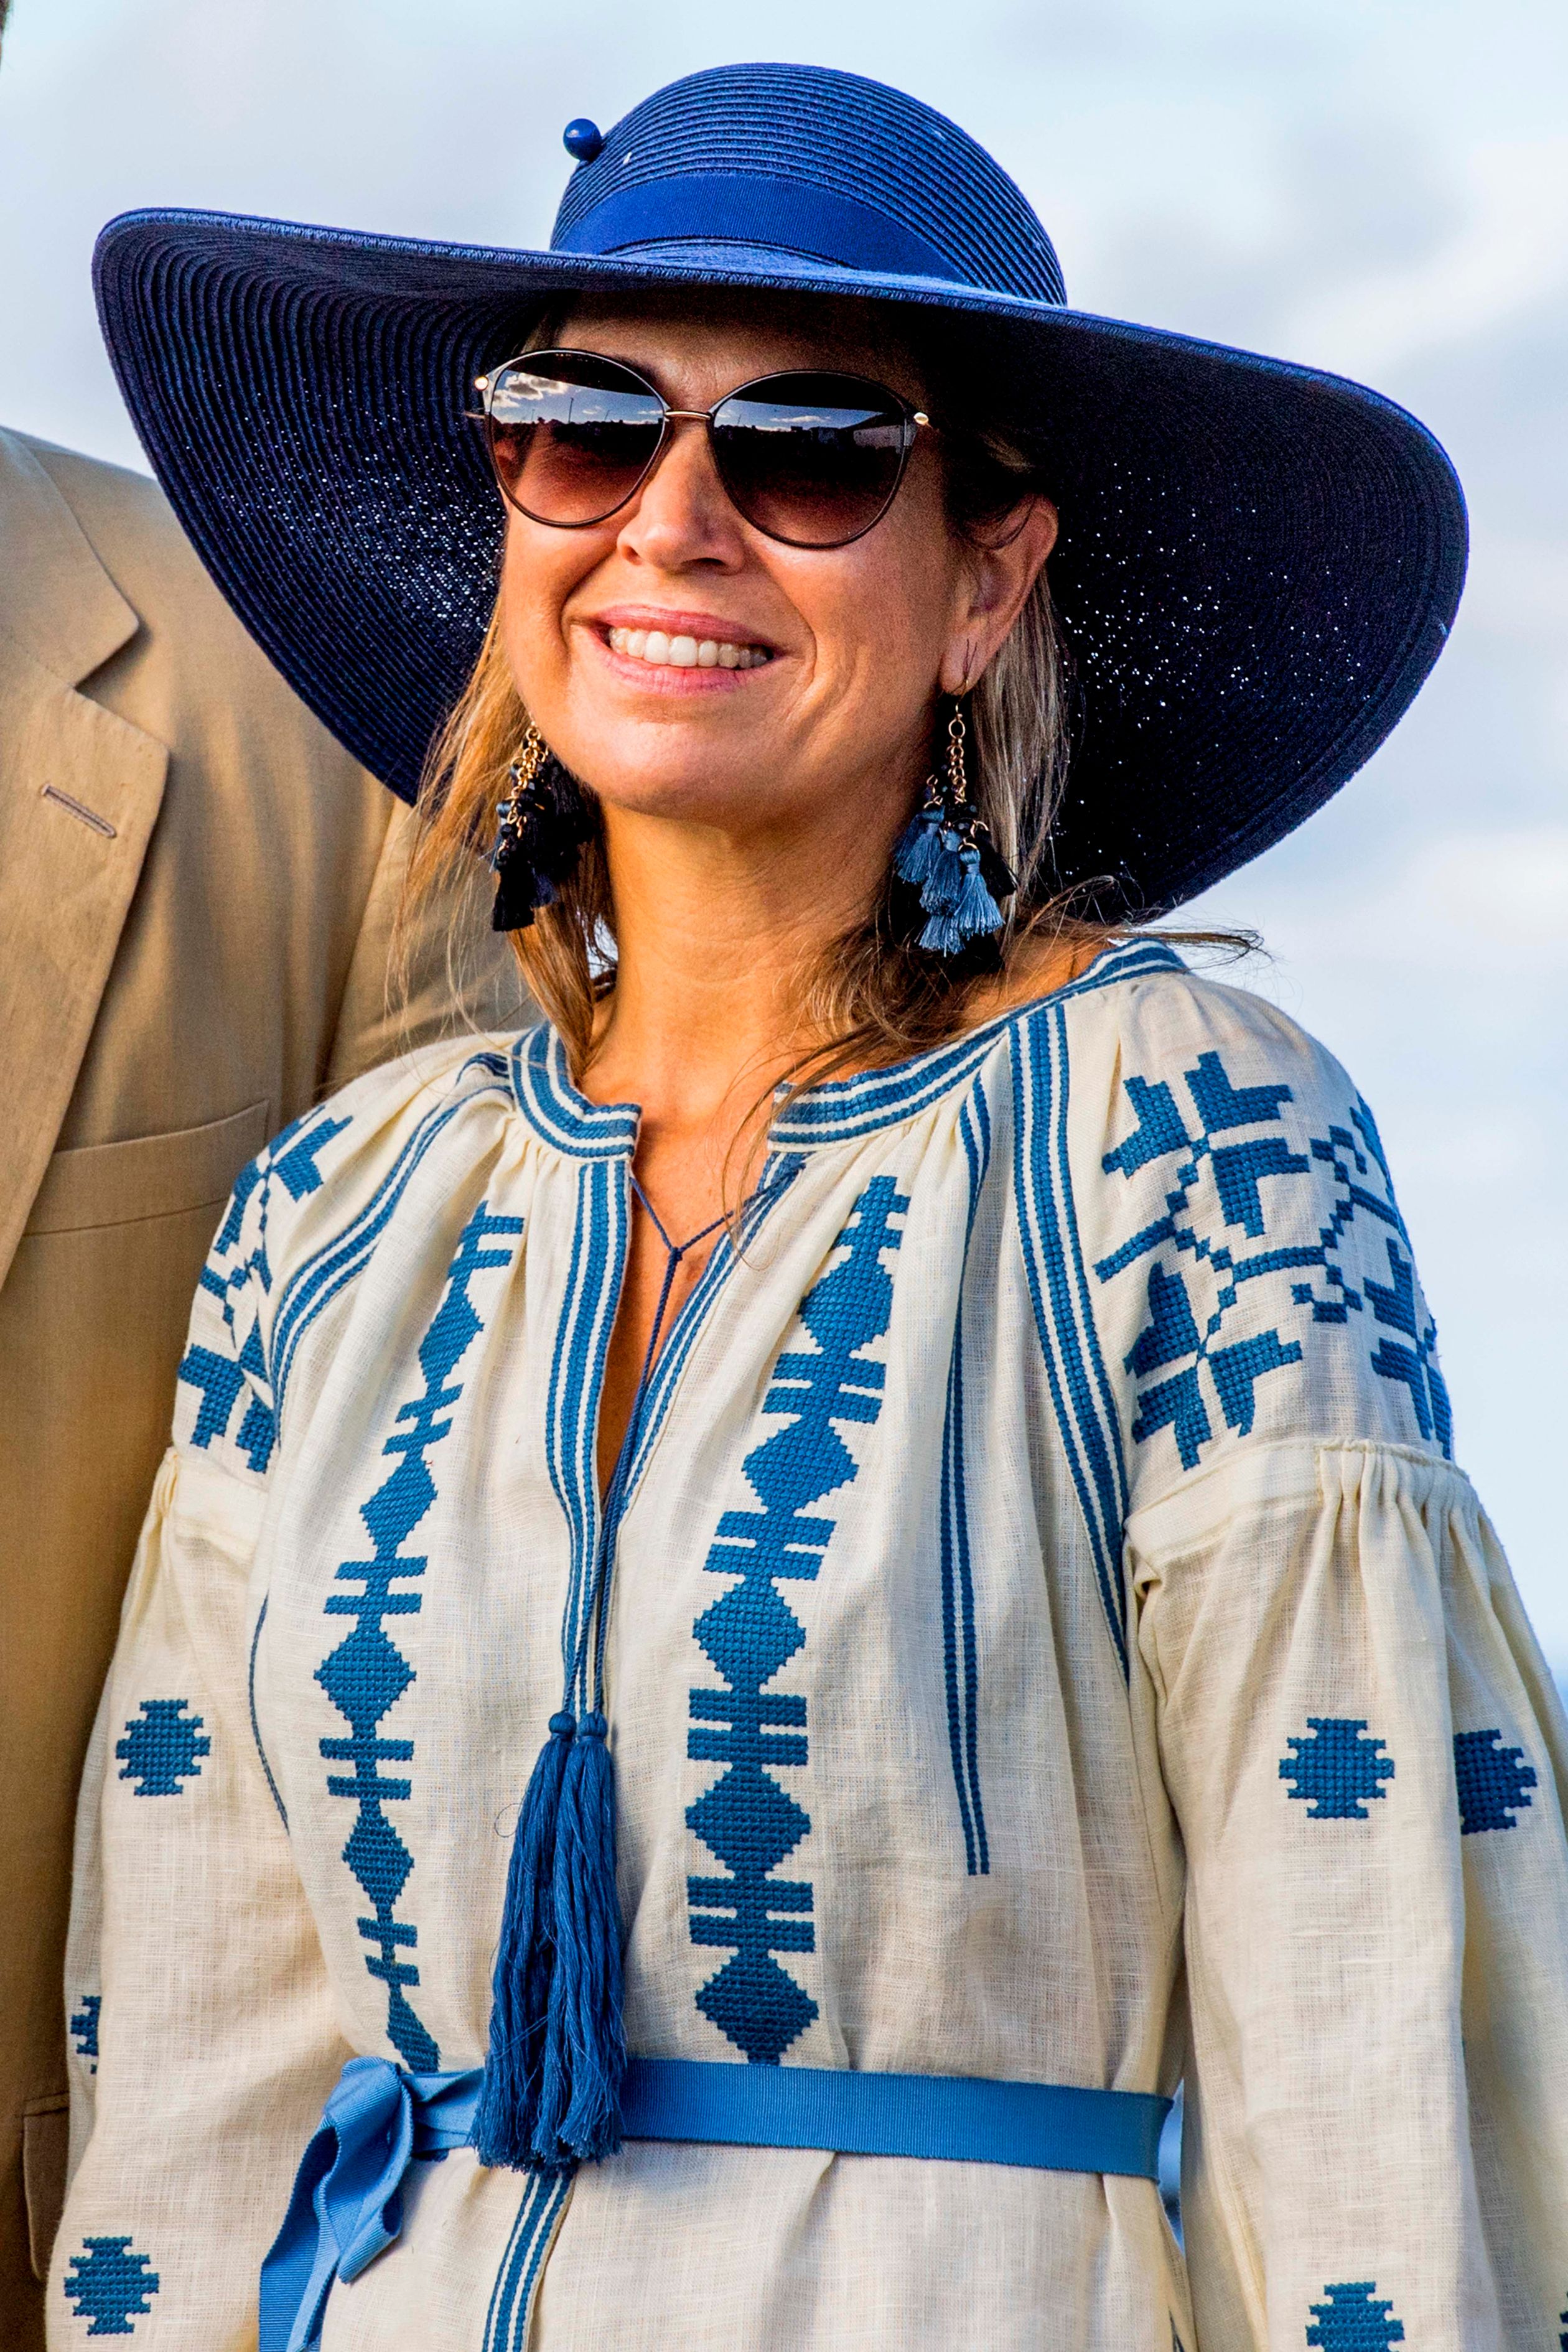 Koningin Maxima verschijnt op Sint Eustatius in een zomerse outfit, waarbij deze zonnebril het